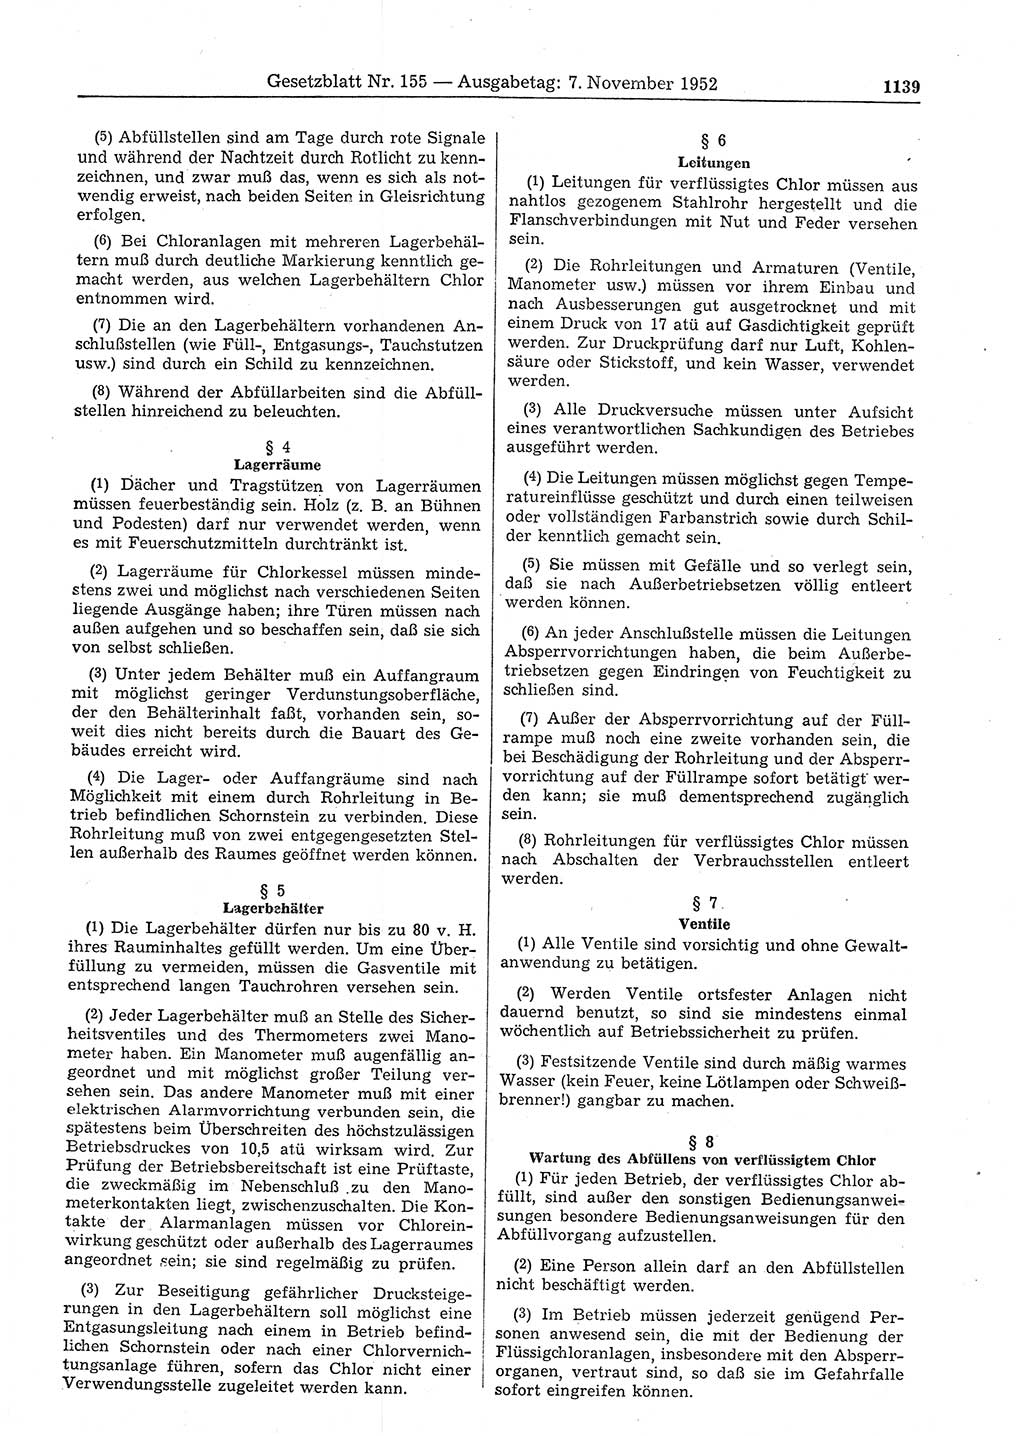 Gesetzblatt (GBl.) der Deutschen Demokratischen Republik (DDR) 1952, Seite 1139 (GBl. DDR 1952, S. 1139)